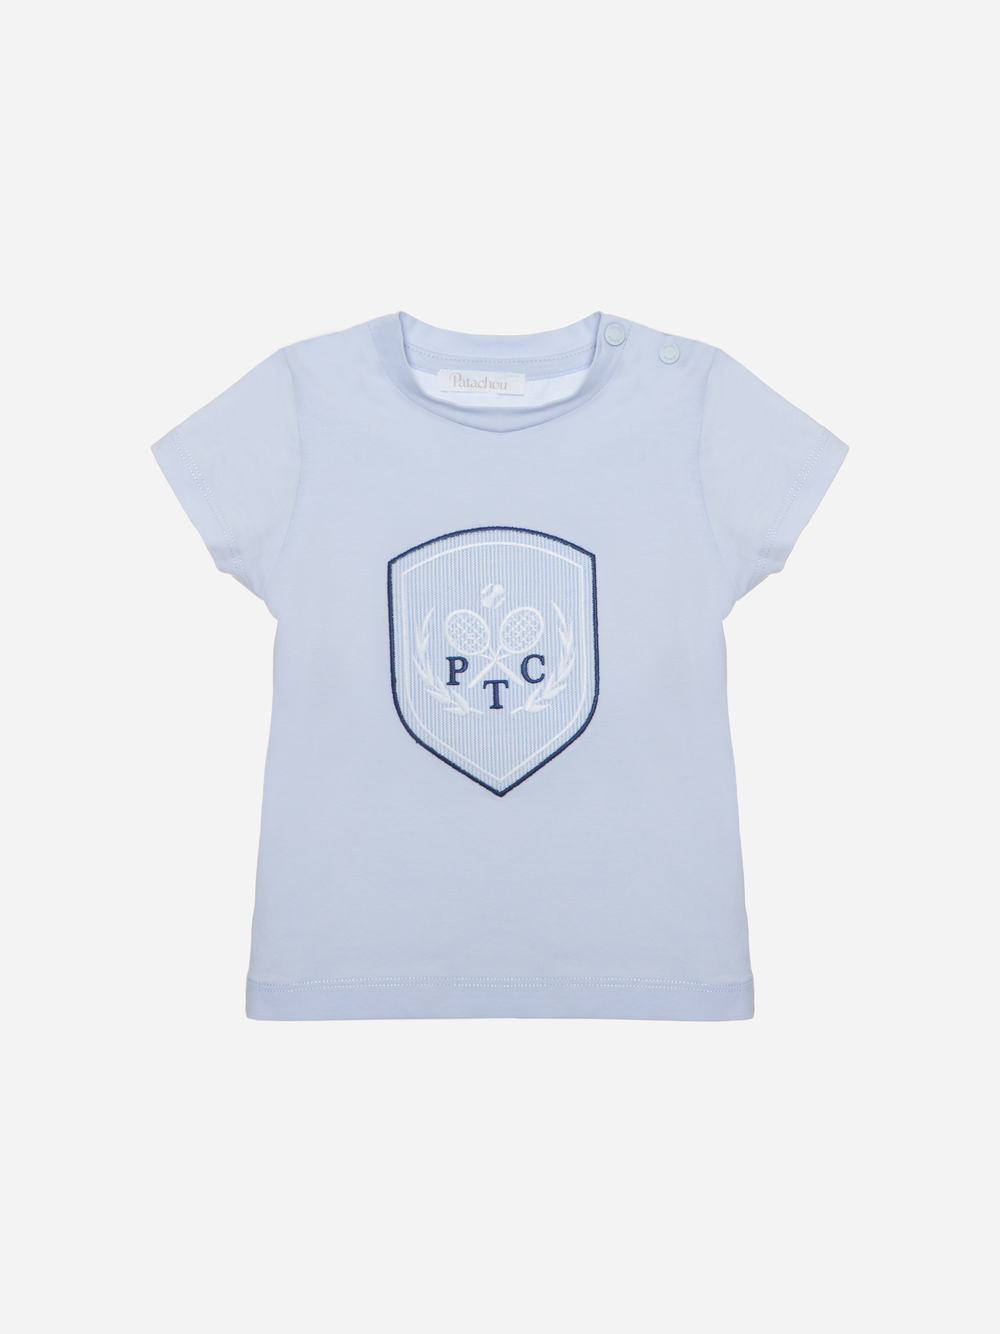 T-shirt azul de menino com estampado frontal